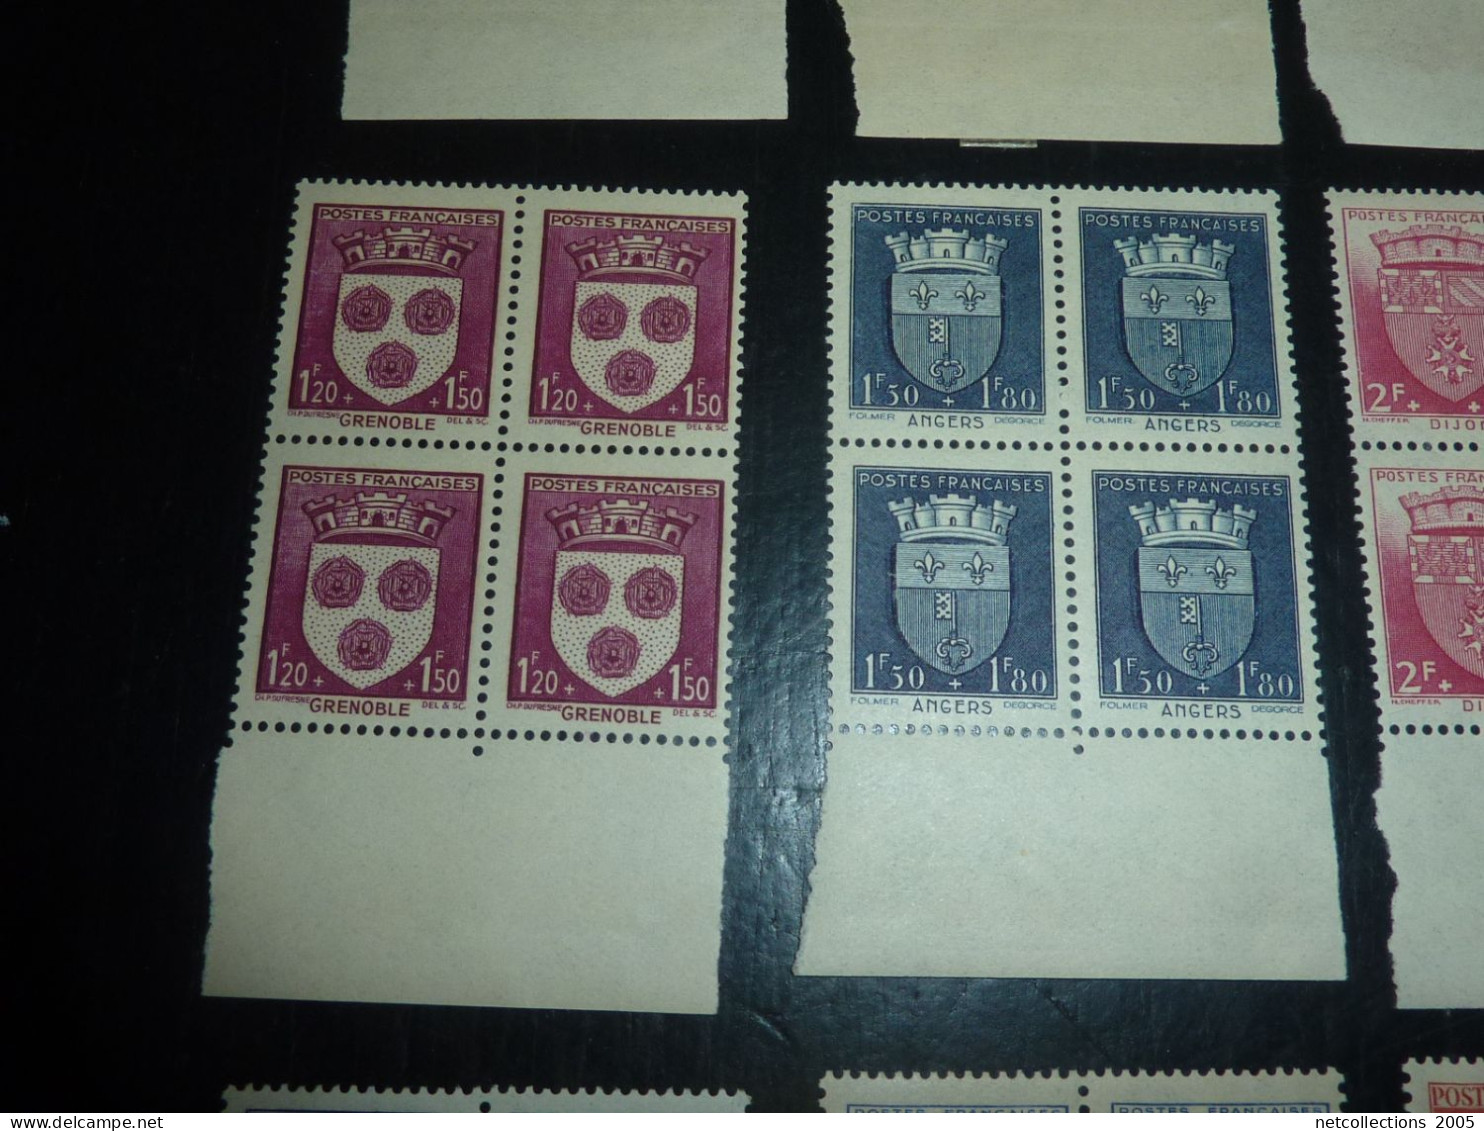 TIMBRE DE FRANCE BLOC DE 4 1942 N°553/564 BORD DE FEUILLE - NEUF SANS CHARNIERE SUR TIMBRE (20/09) - 1941-66 Coat Of Arms And Heraldry